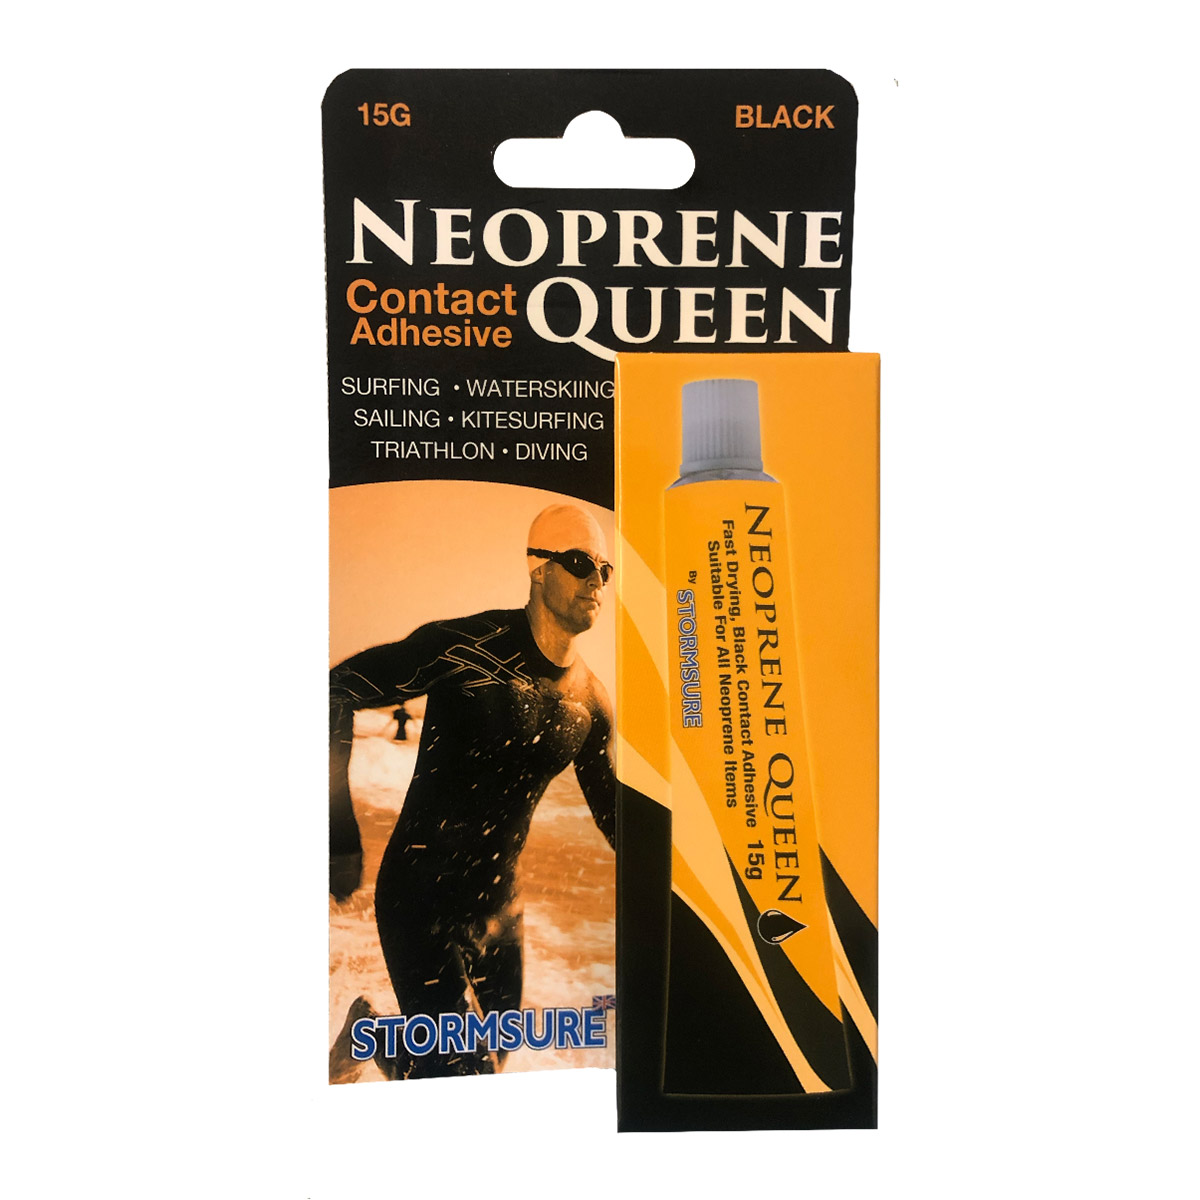 Stormsure neoprene queen